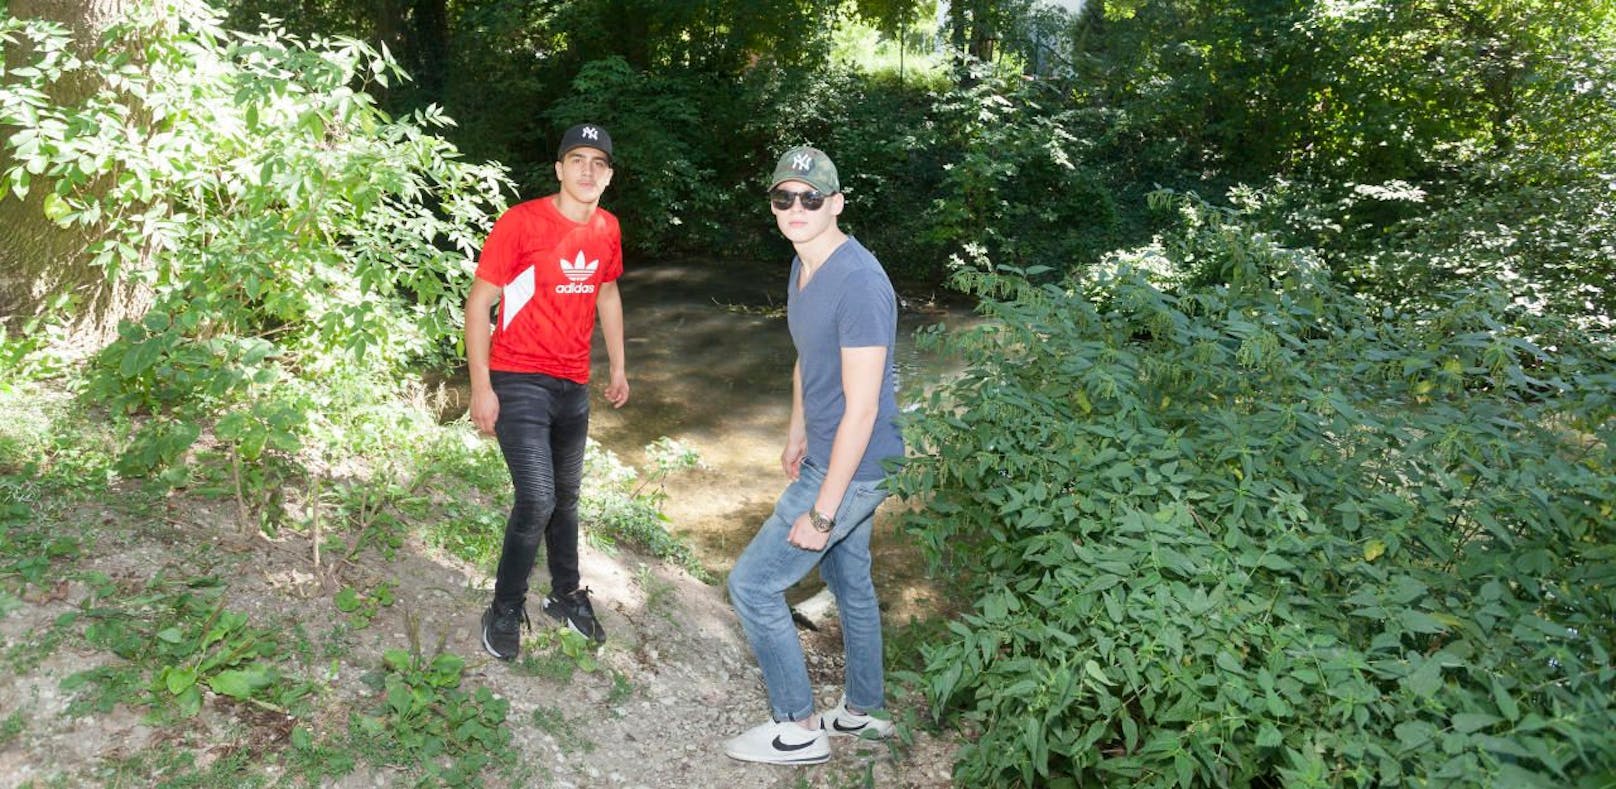 Die beiden Freunde Ali Altmann (16) und Markus Scheubmaier (17) retteten einen Mann an dieser Stelle aus dem Weidingerbach vor dem Ertrinken.